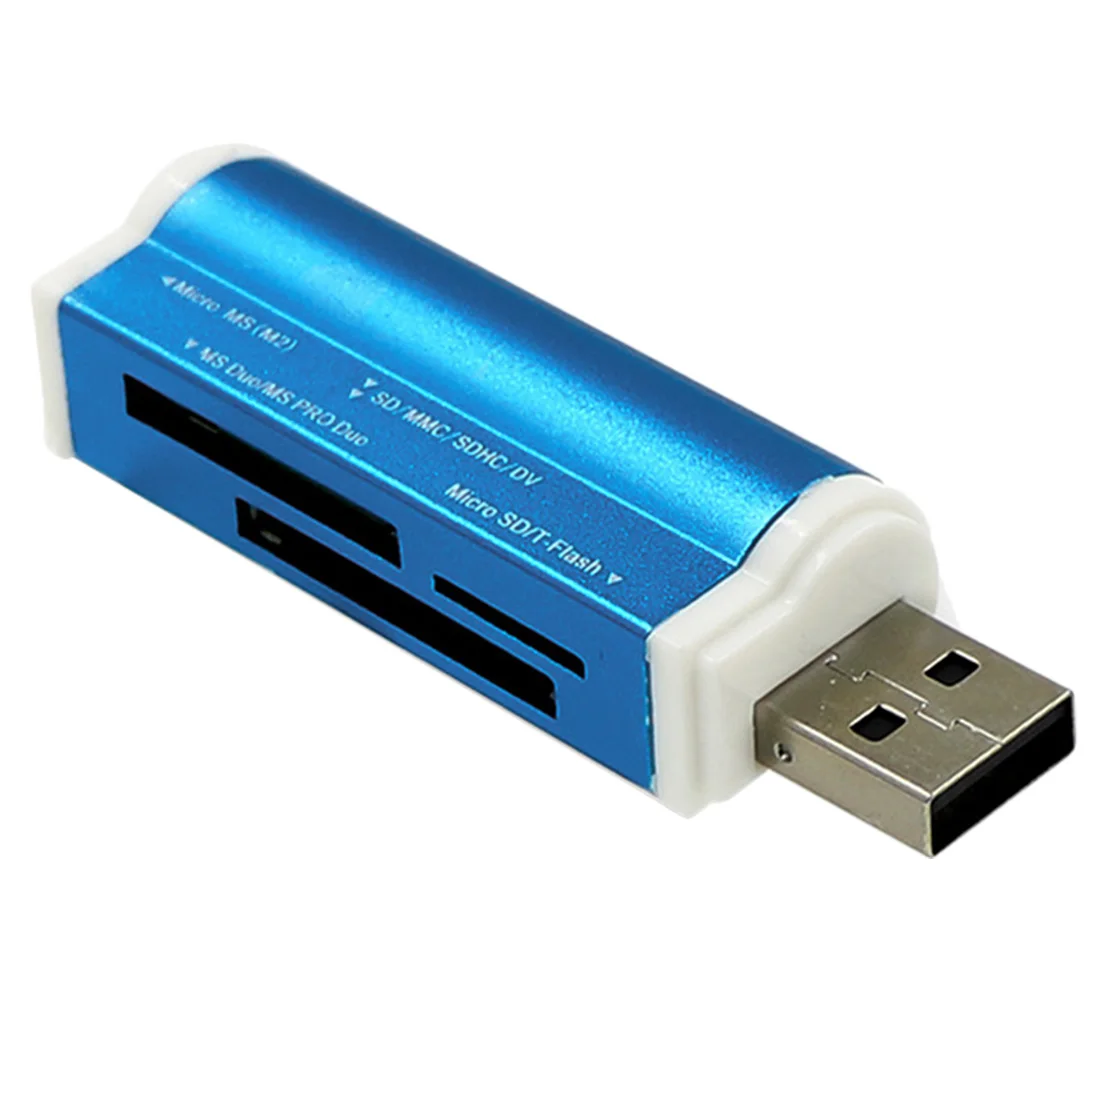 Разноцветный для картридер 2 микро-sd TF M2 MMC MS PRO DUO все в 1 Micro USB 2,0 Устройство чтения карт памяти адаптер кард-ридер